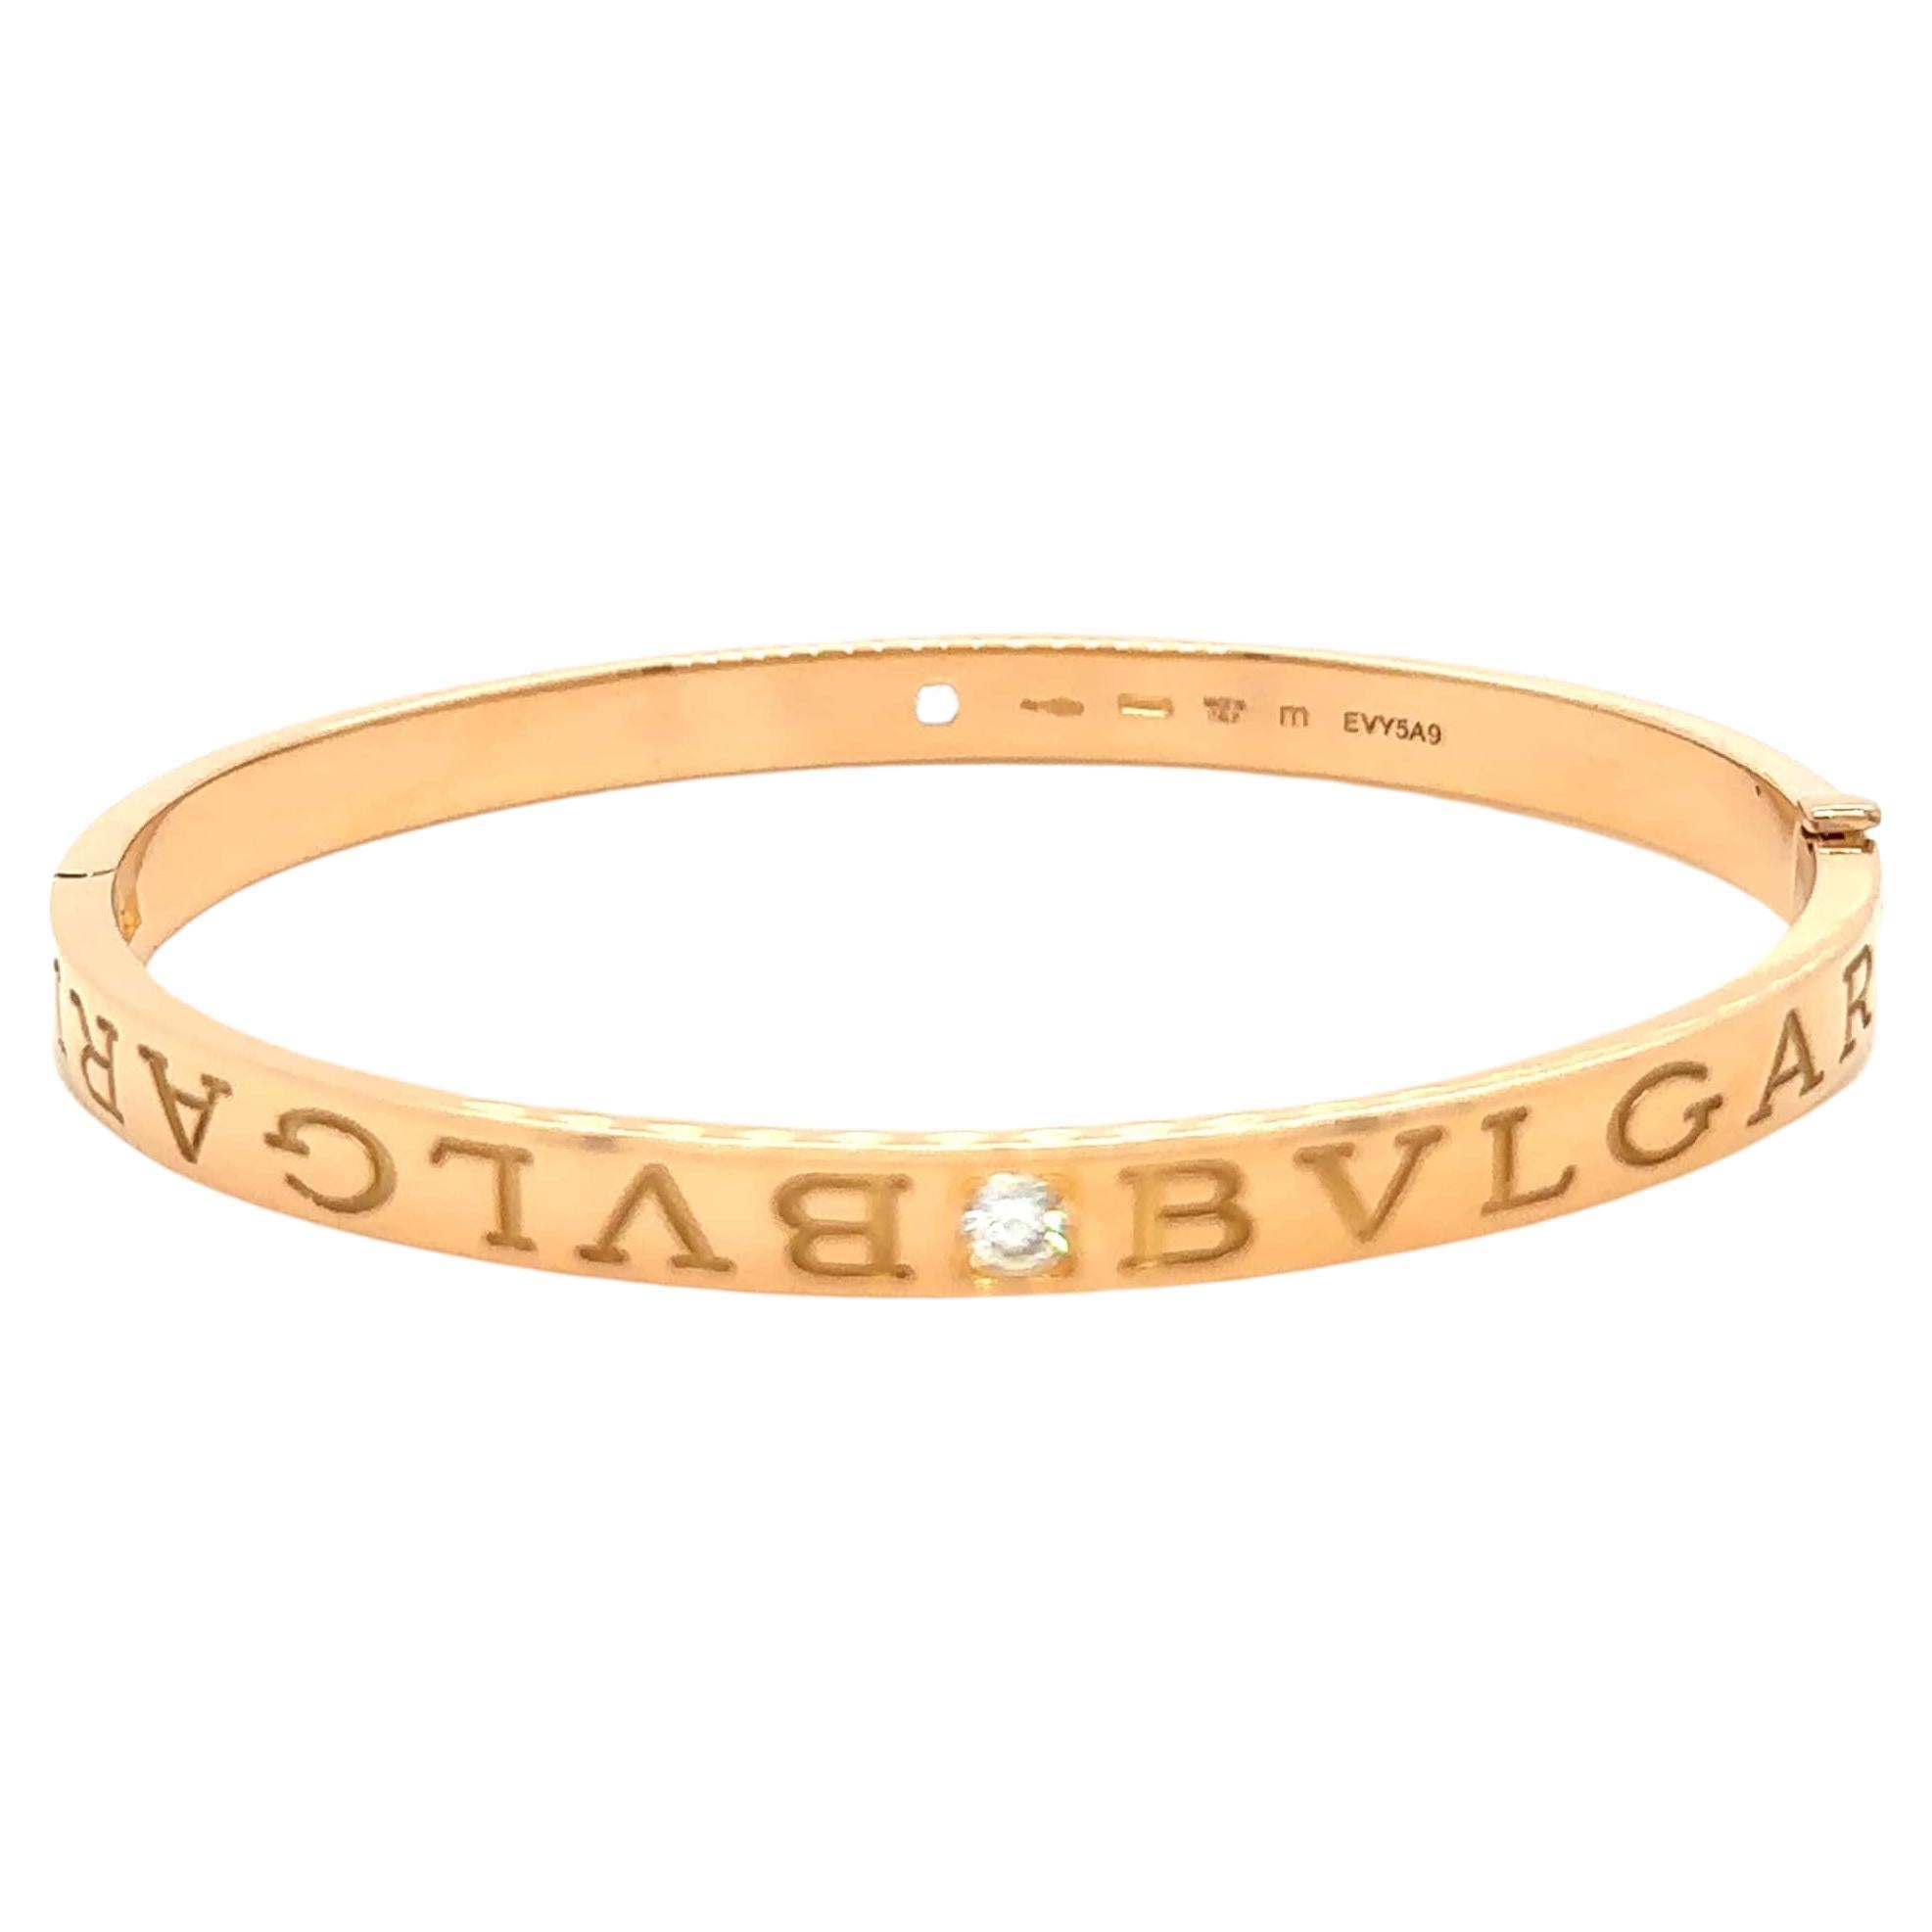 Bvlgari Bvlgari Rose Gold Bracelet 0.26 Carat